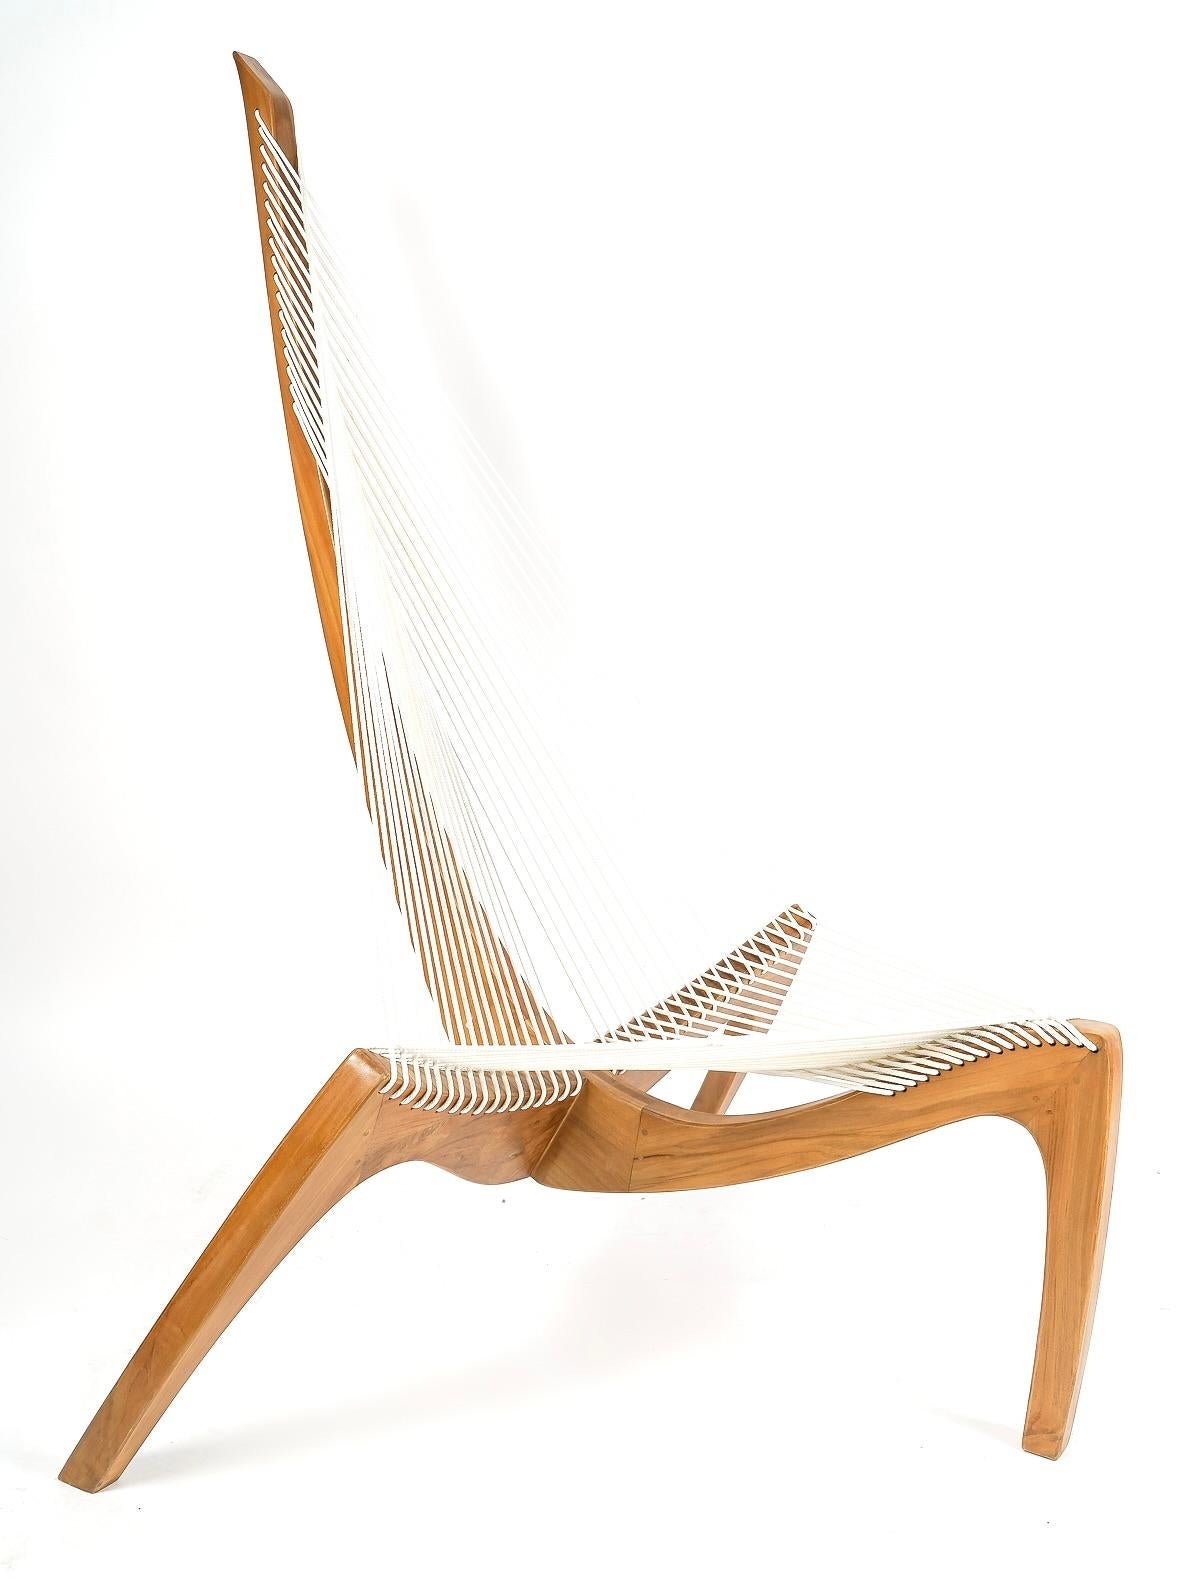 1970 Pair harp chair by Jørgen Høvelskov for Christensen & Larsen Møbelhandværk. 3